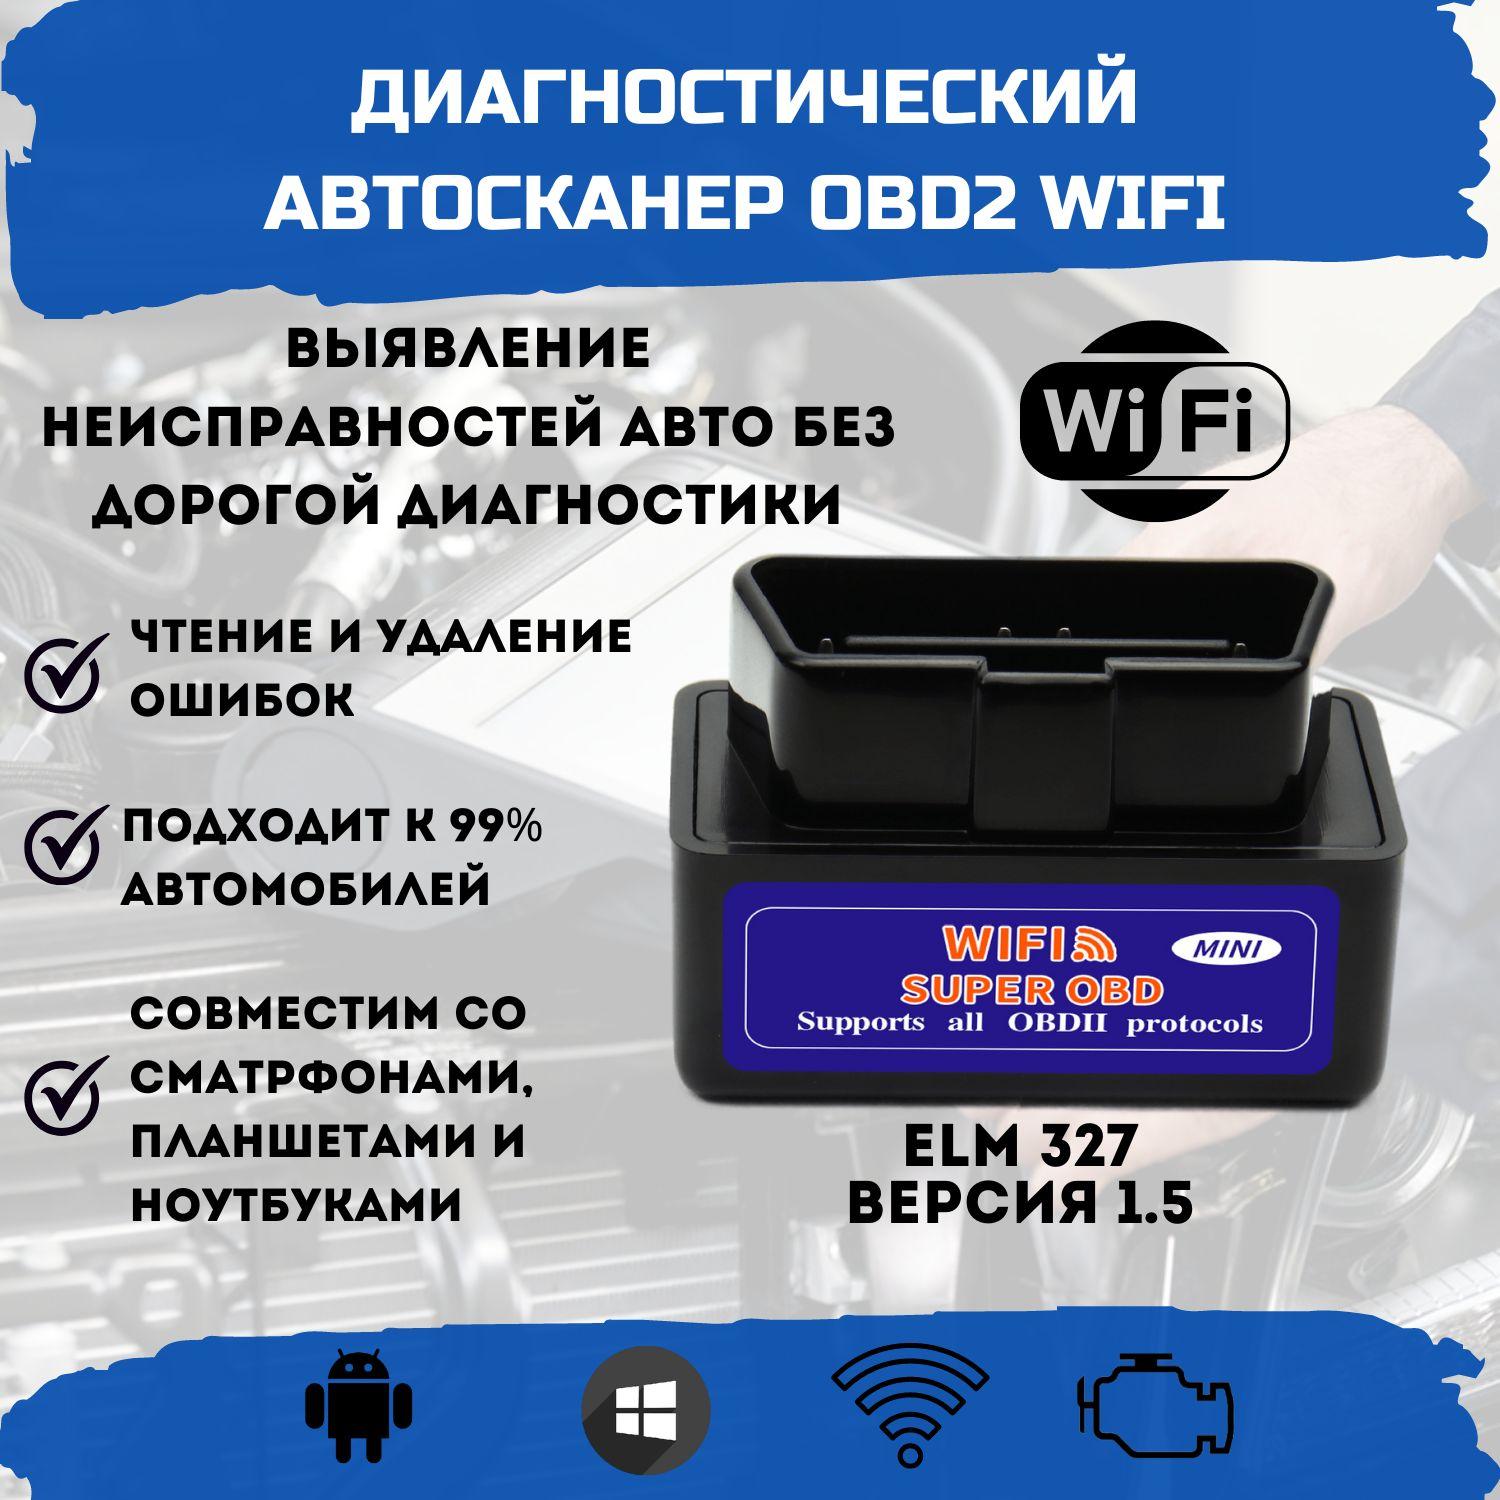 Автосканер ELM327 v1.5 / OBD2 адаптер для диагностики авто / сканер WiFi для Android, Windows, IOS